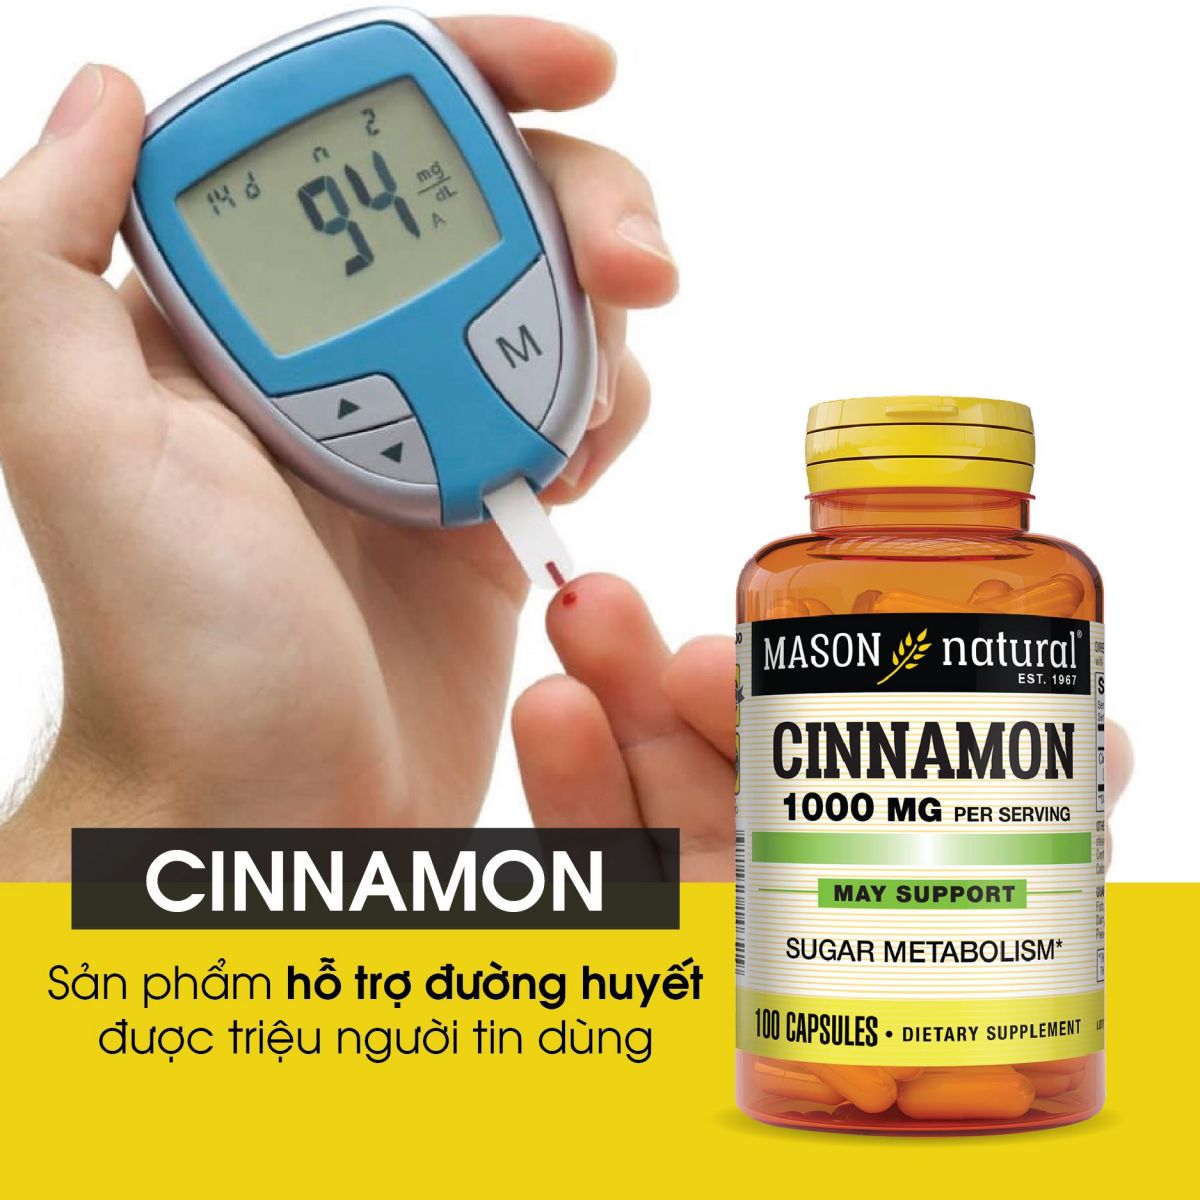 Mason Natural Cinnamon 1000mg là lựa chọn hàng đầu trong việc giúp kiểm soát mức đường huyết ở mức ổn định